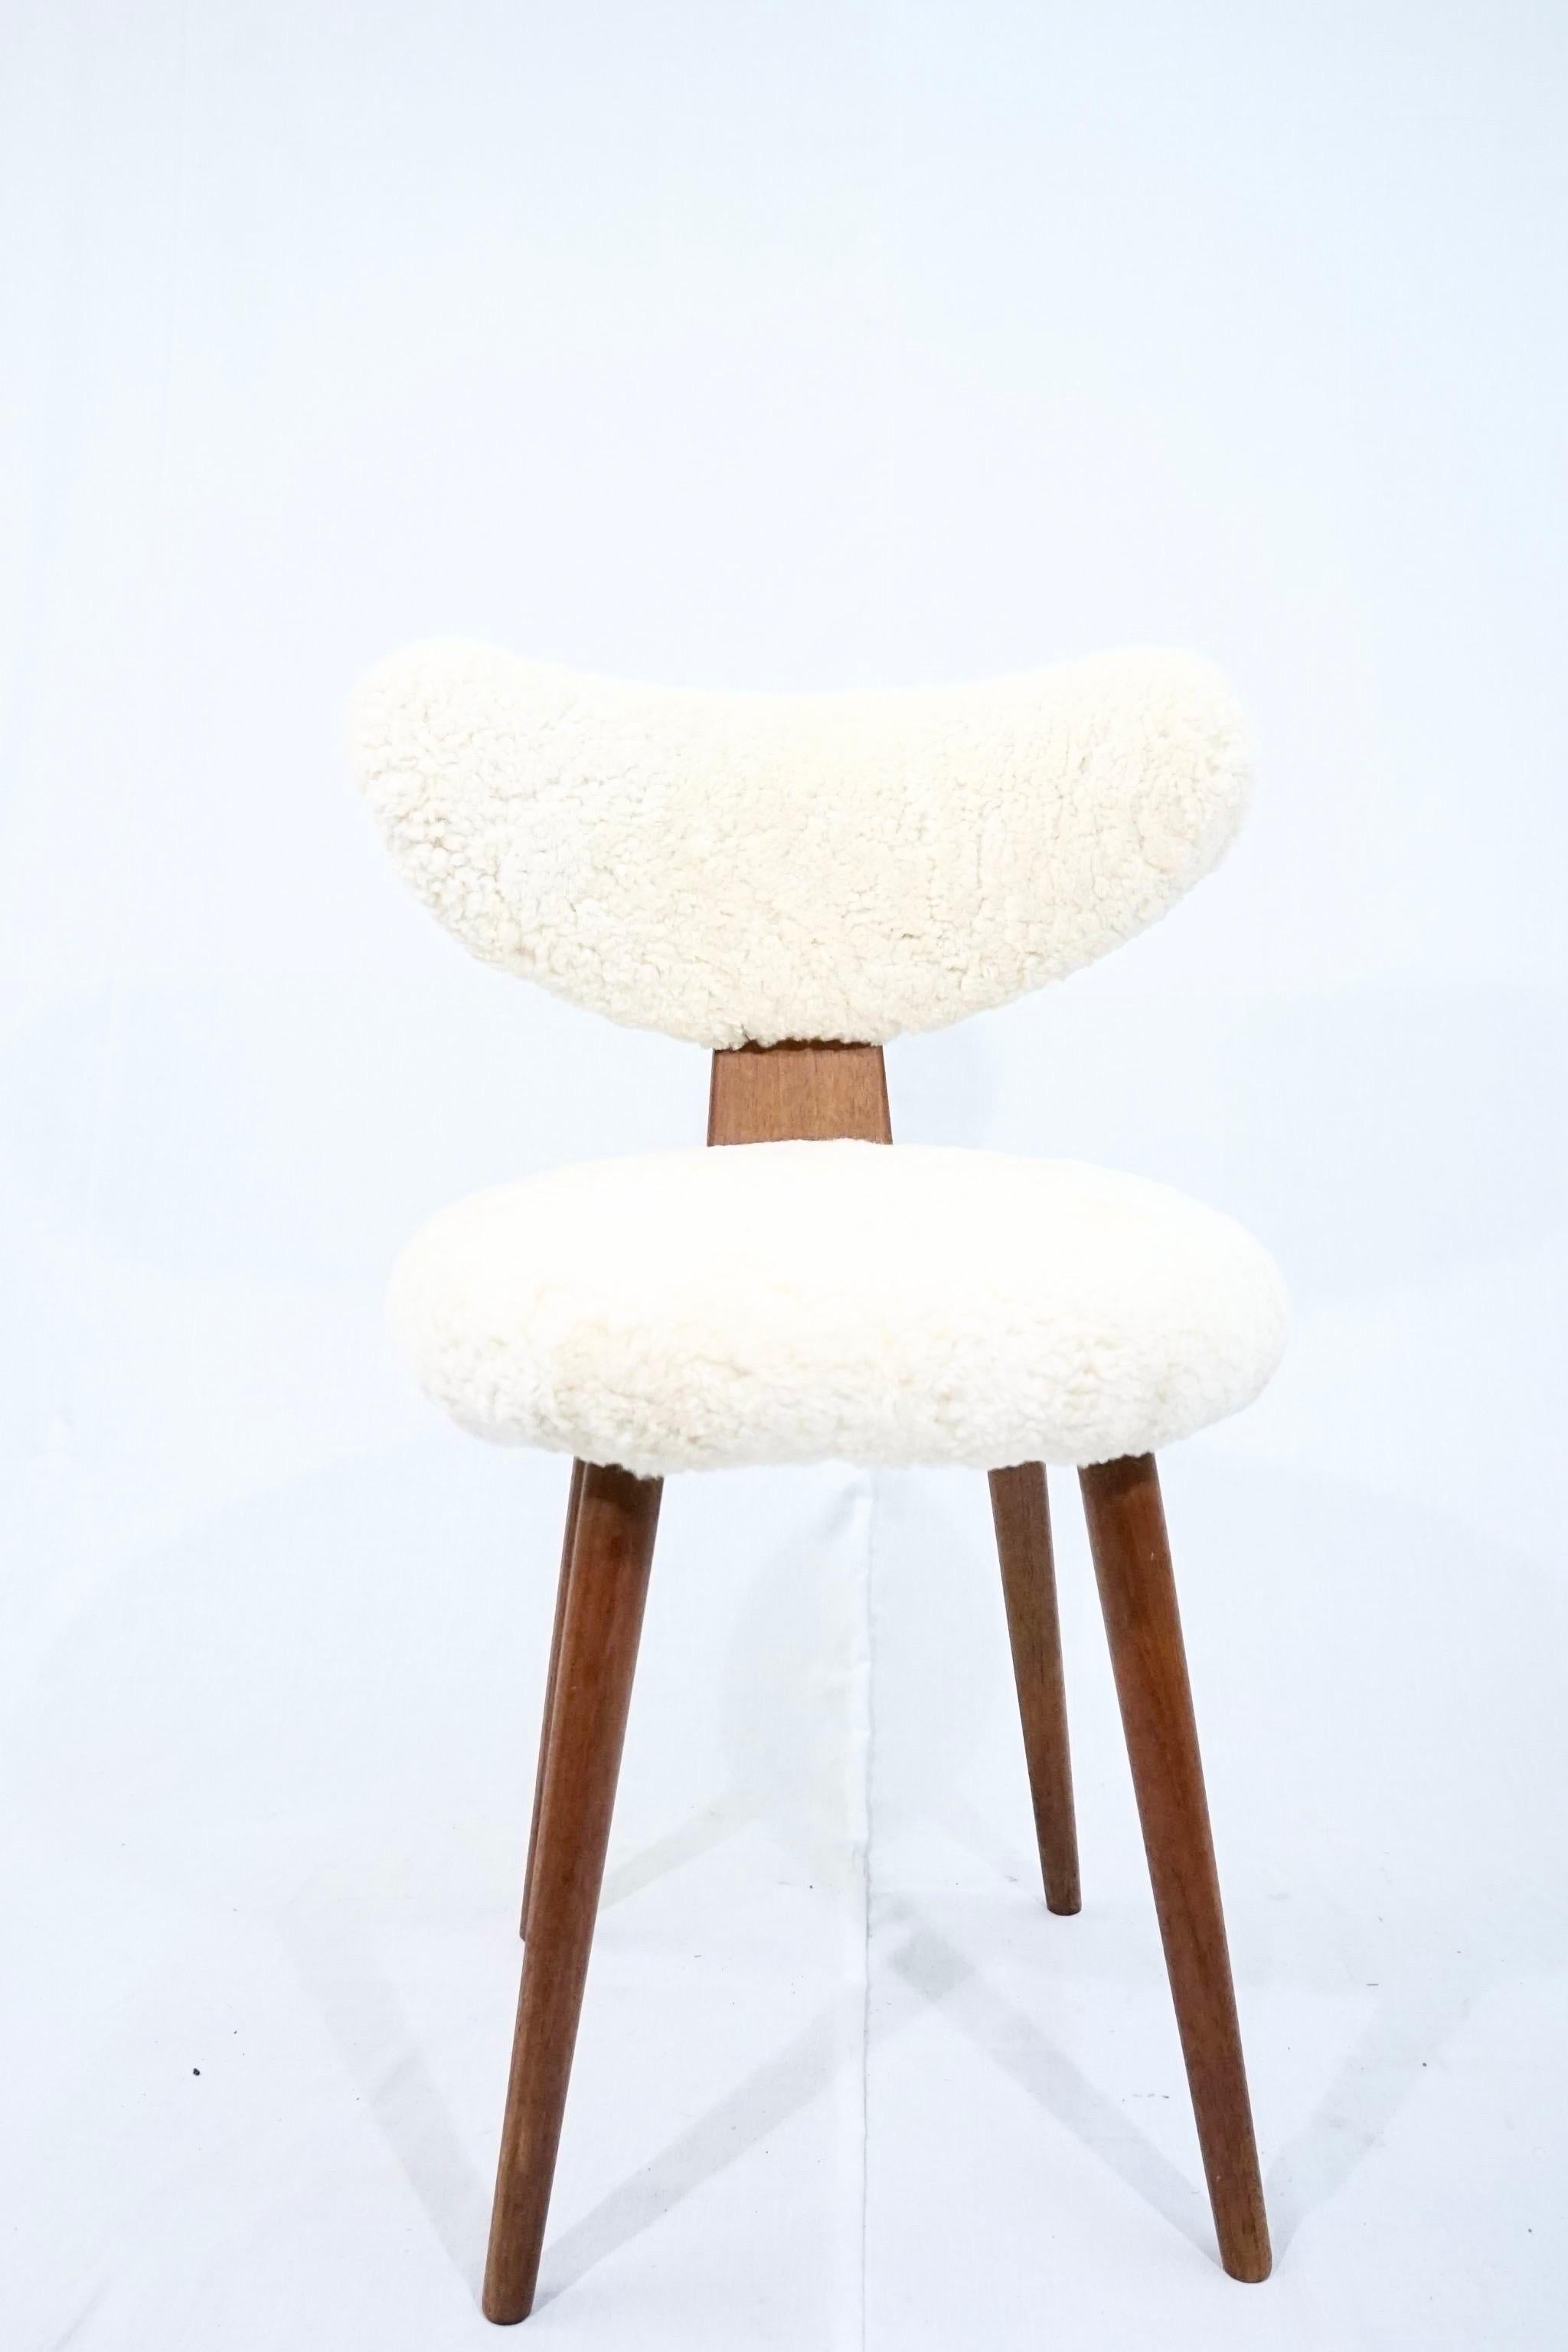 Lambskin Scandinavian Vanity Table Chair in Solid Teak with Lambs Wool